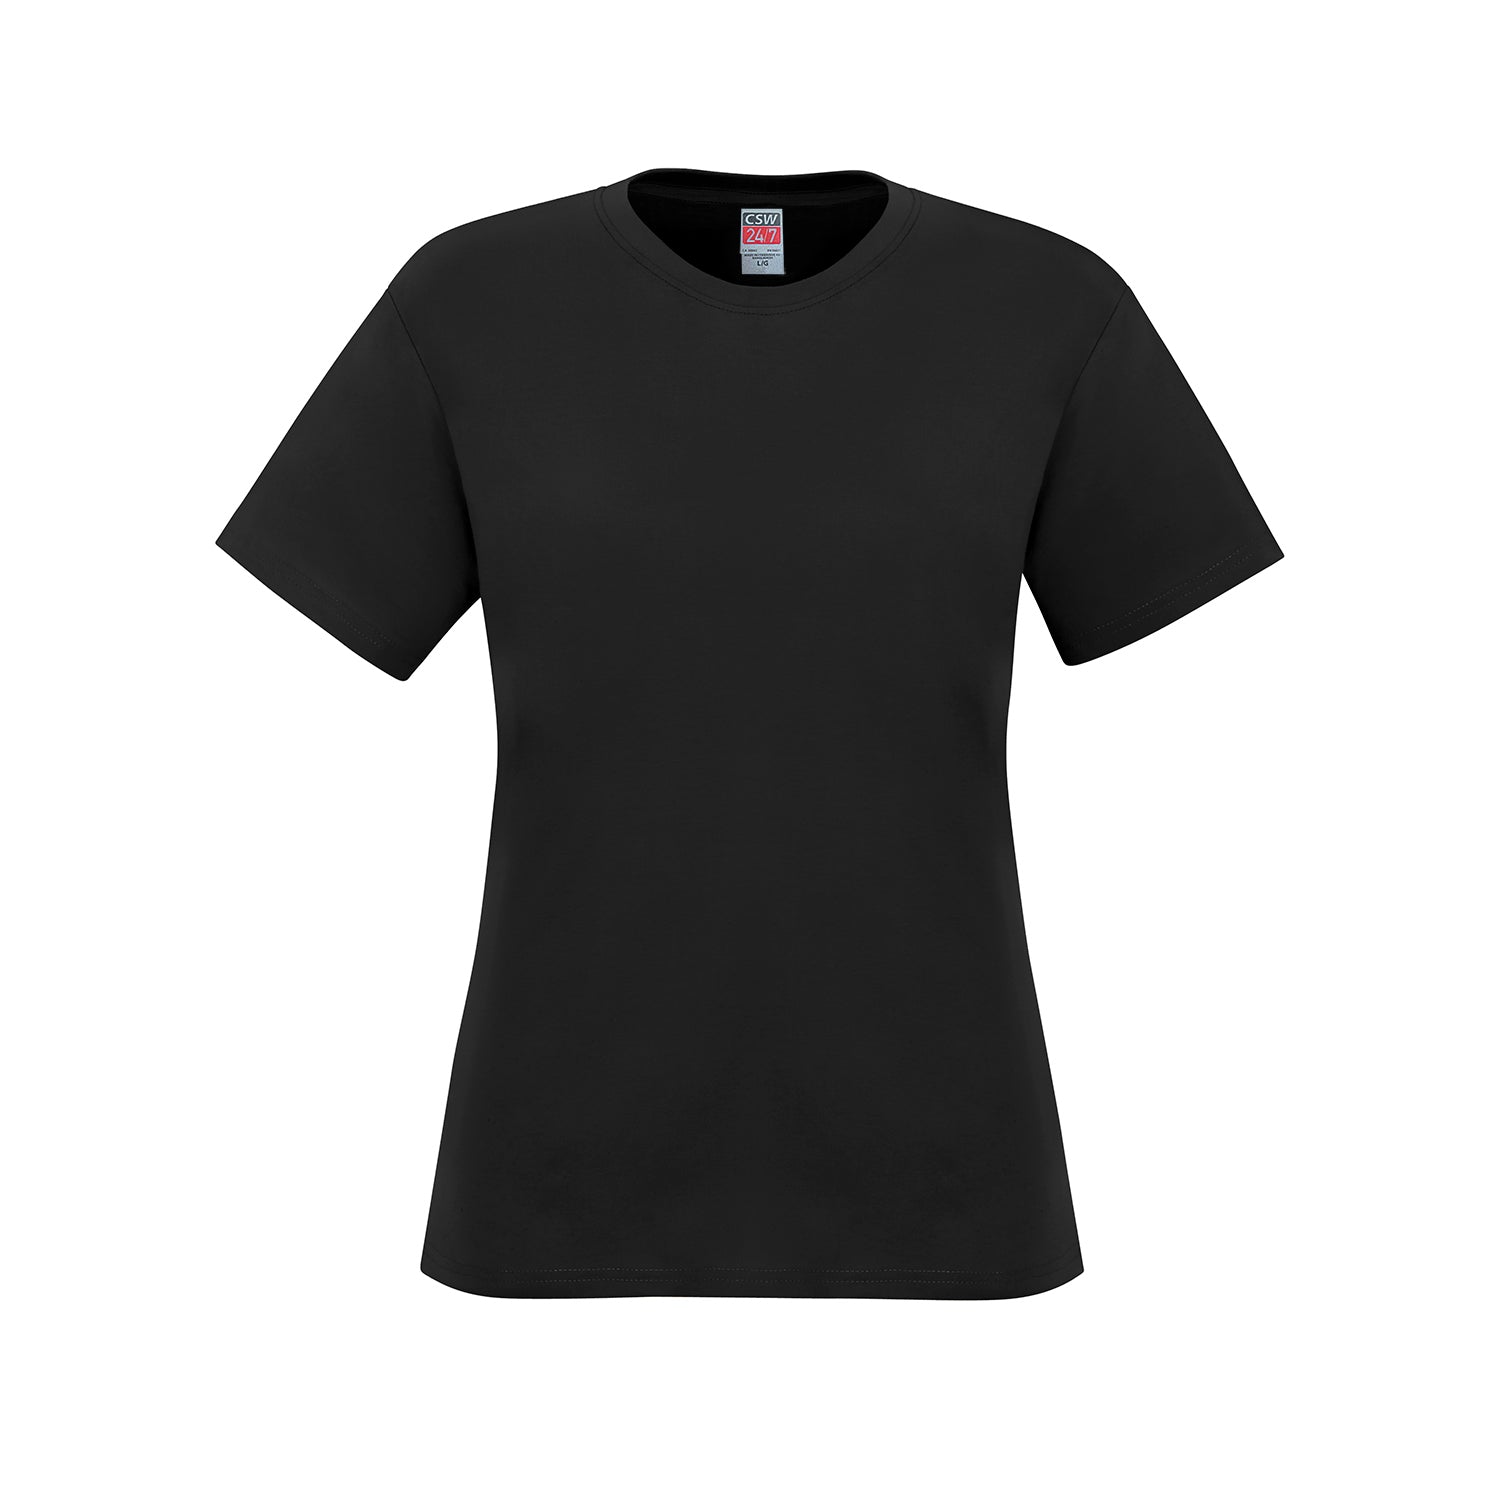 S05611 - Parkour - Ladies Crew Neck Cotton T-Shirt - Black /